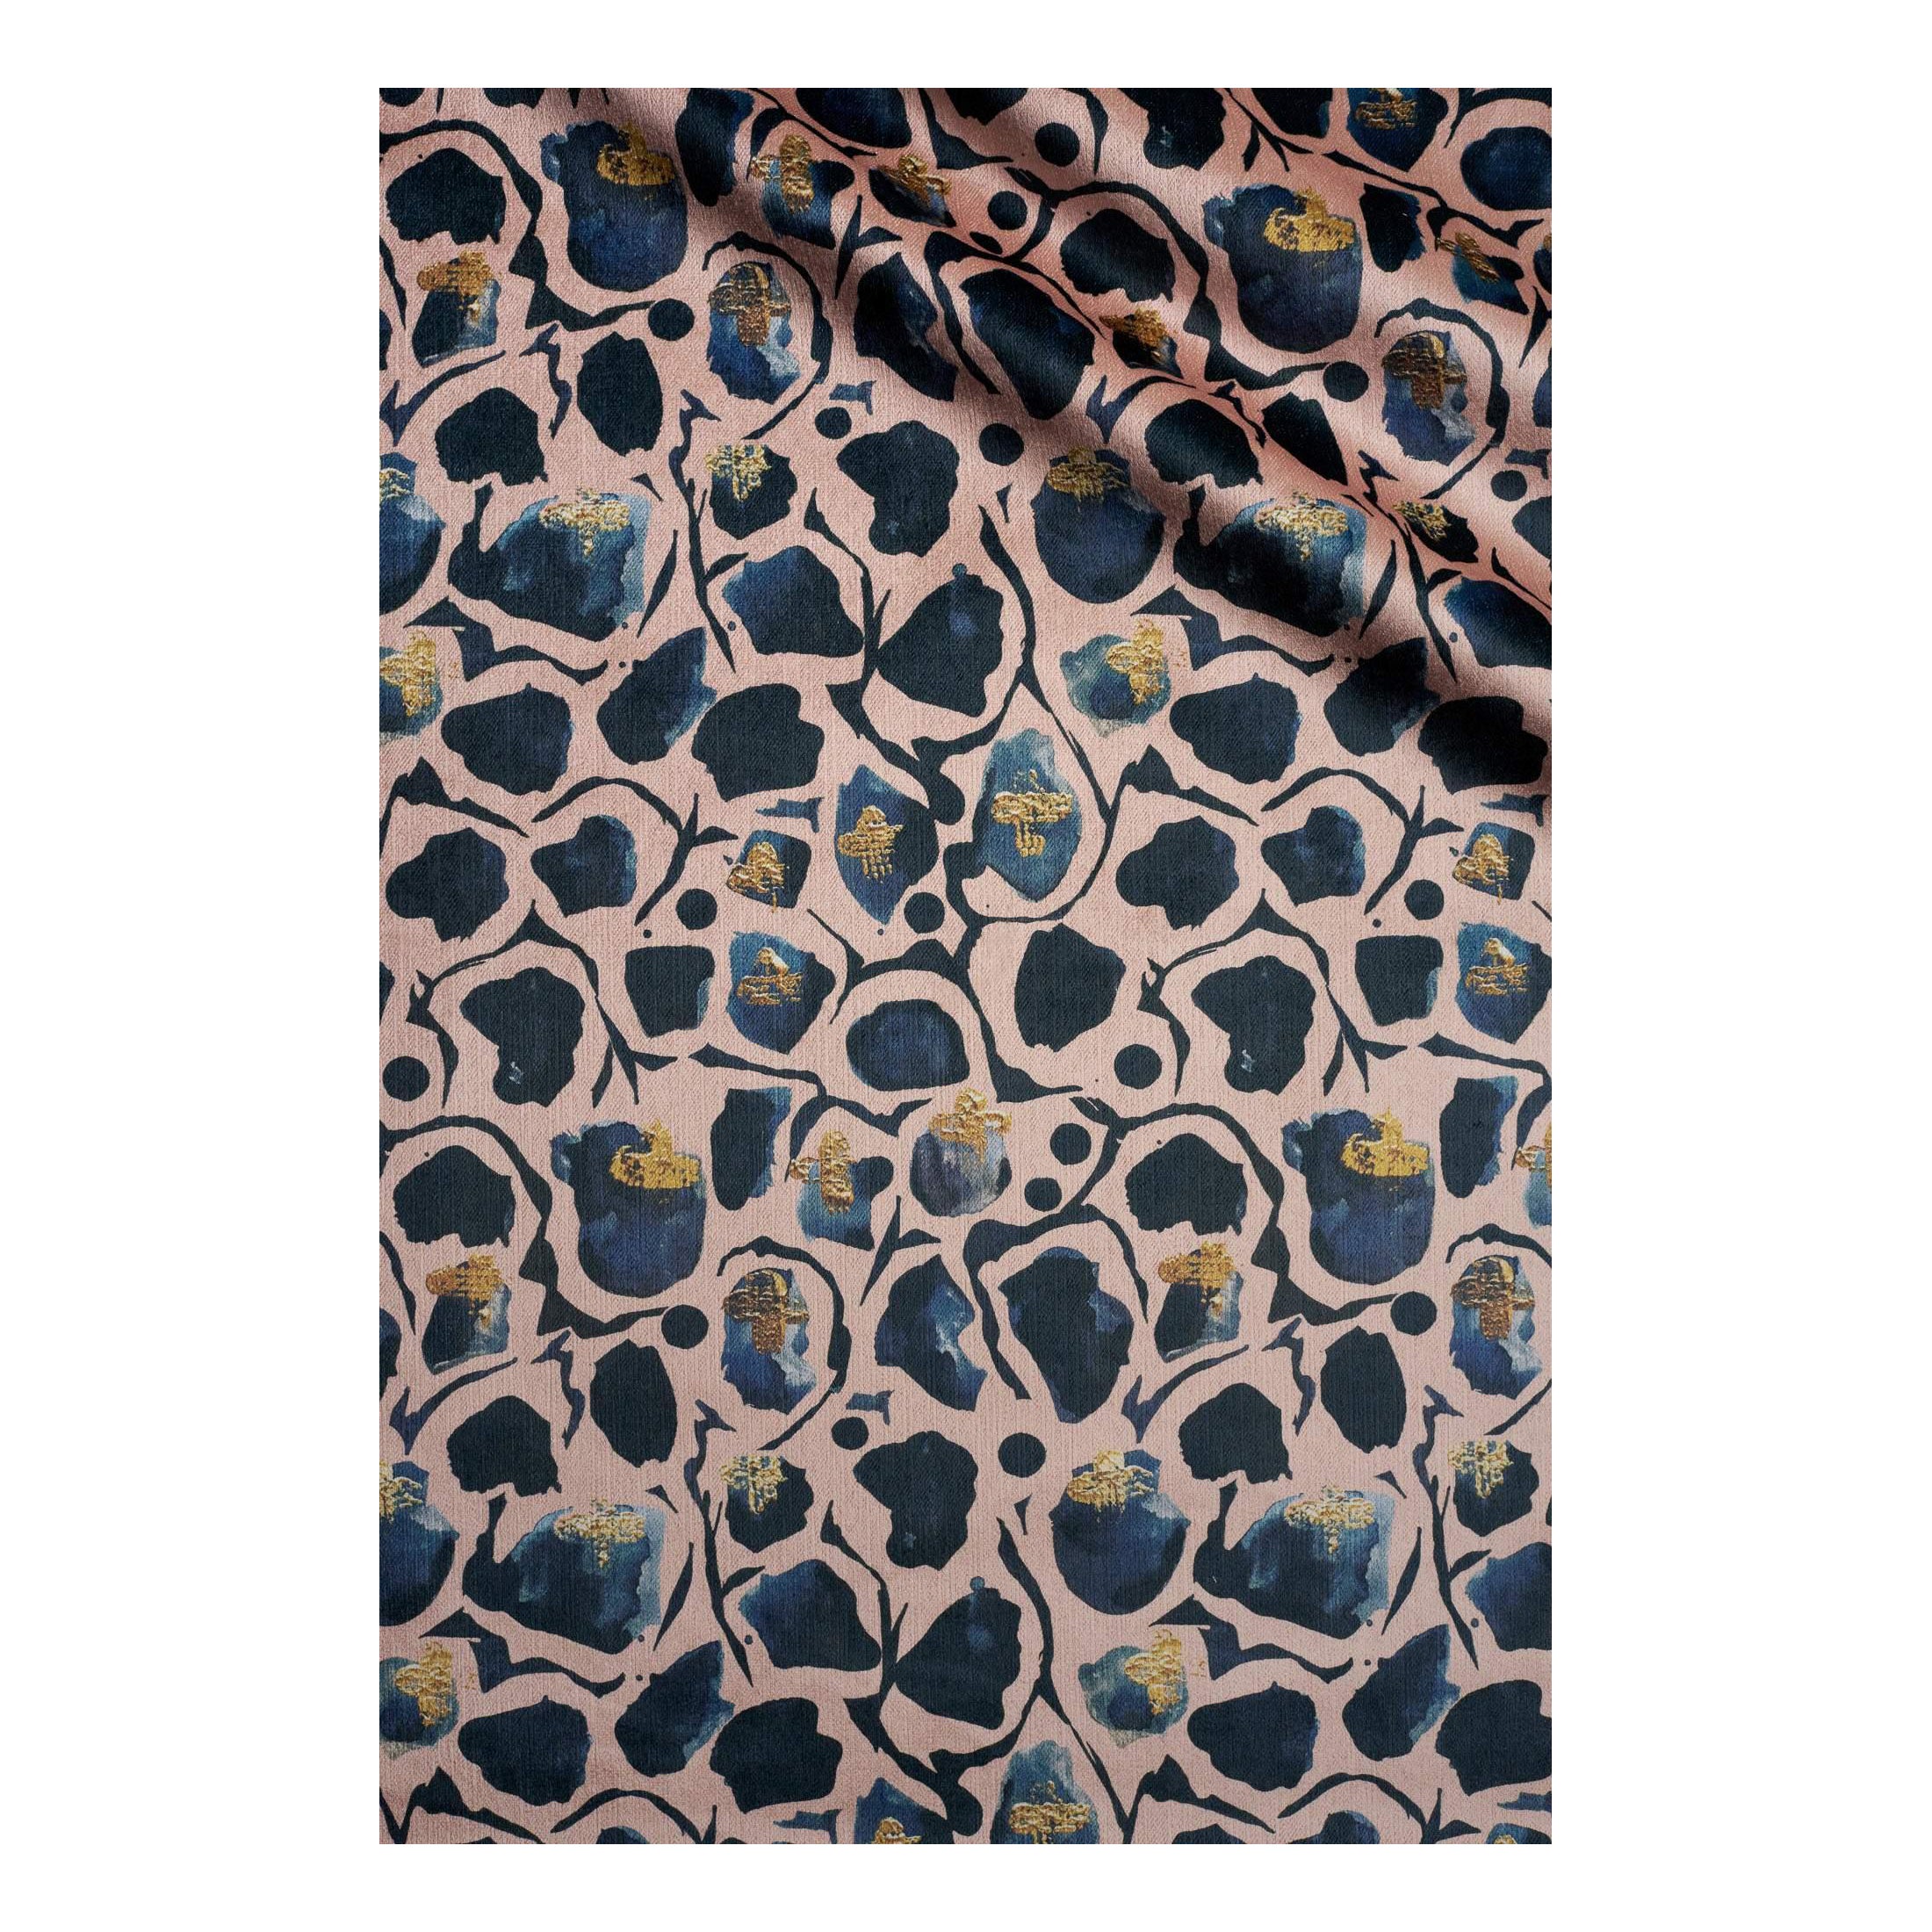 Giraffe Blush Velvet Fabric For Sale